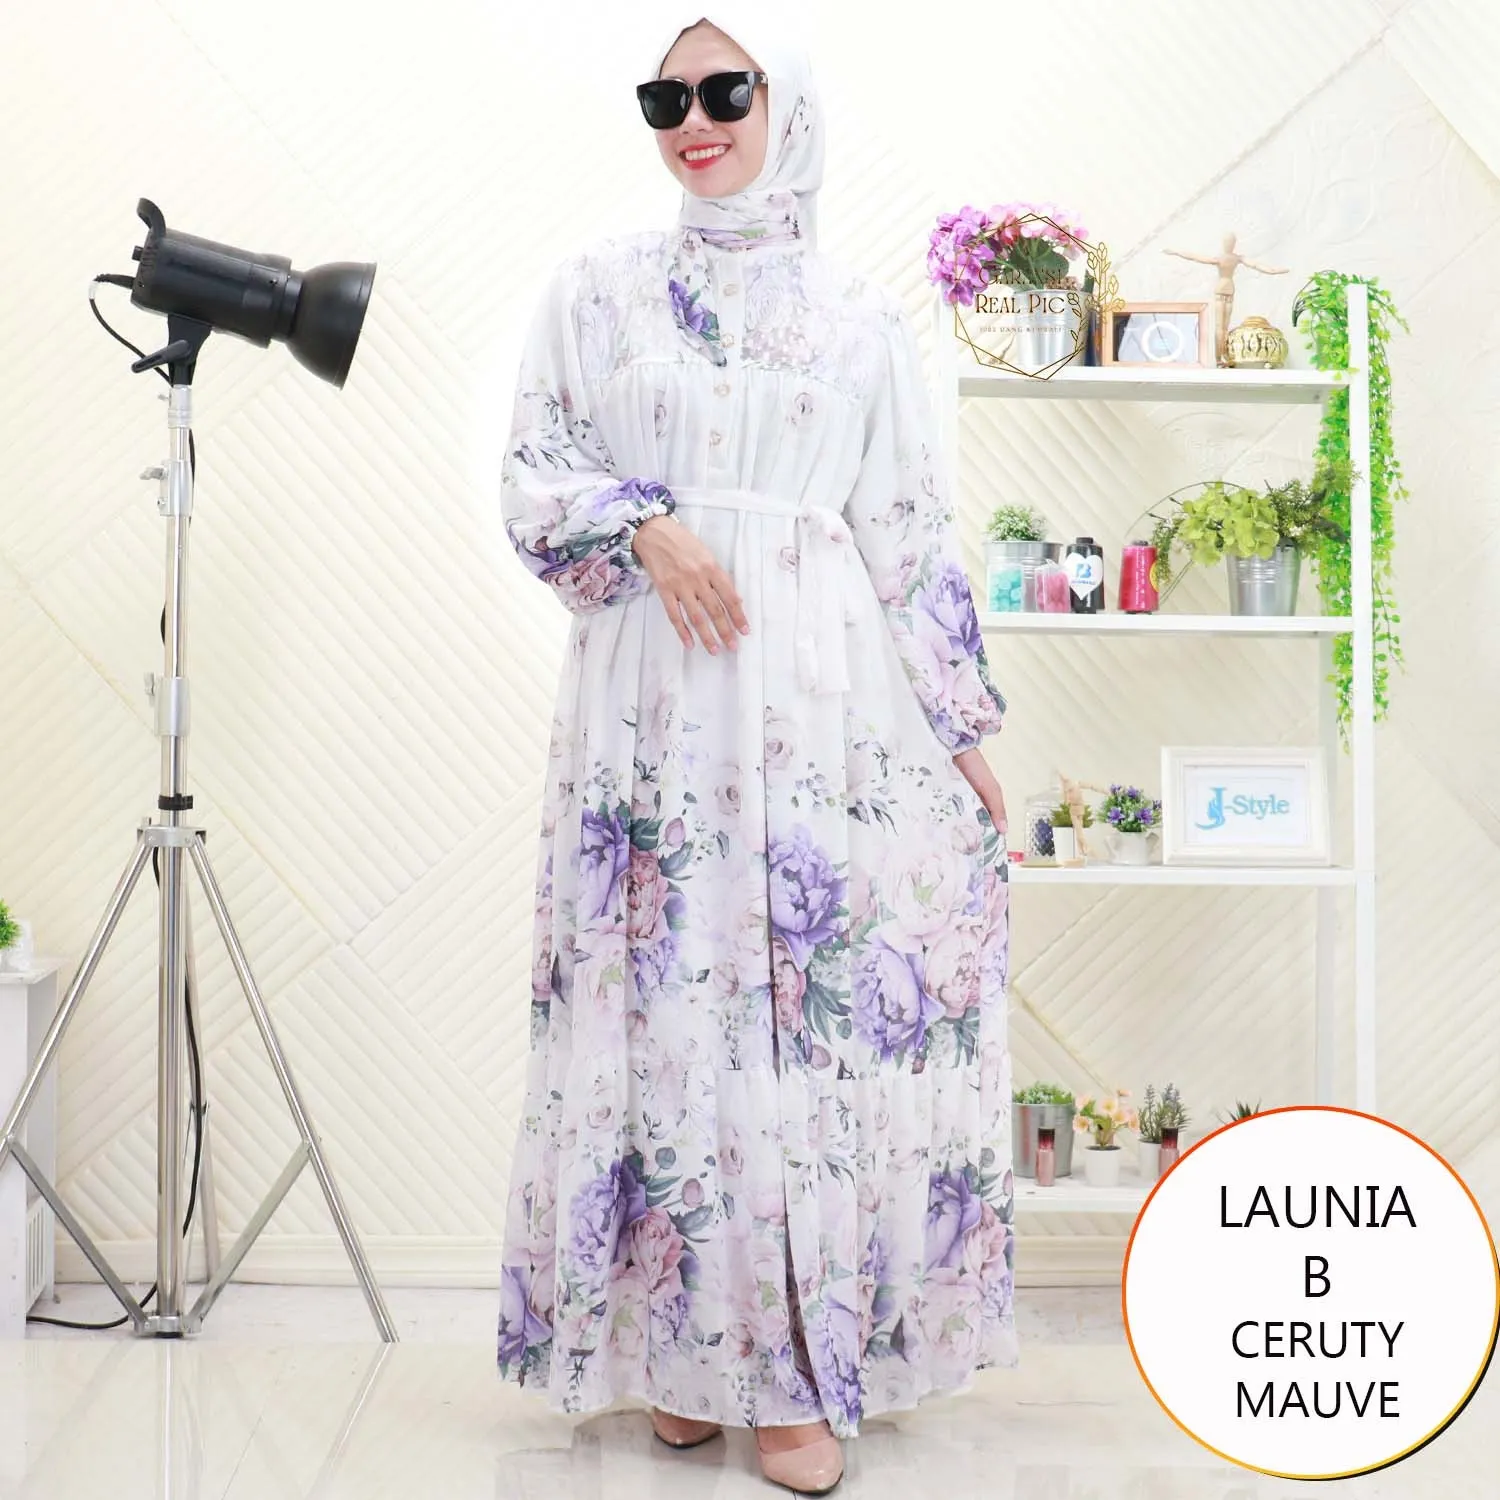 Launia Gamis Meji Set Hijab Ceruty Motif Printing Busui Friendly 8927MEJI ceruty - bajubaru.id, Belanja Online di bajubaru.id saja 